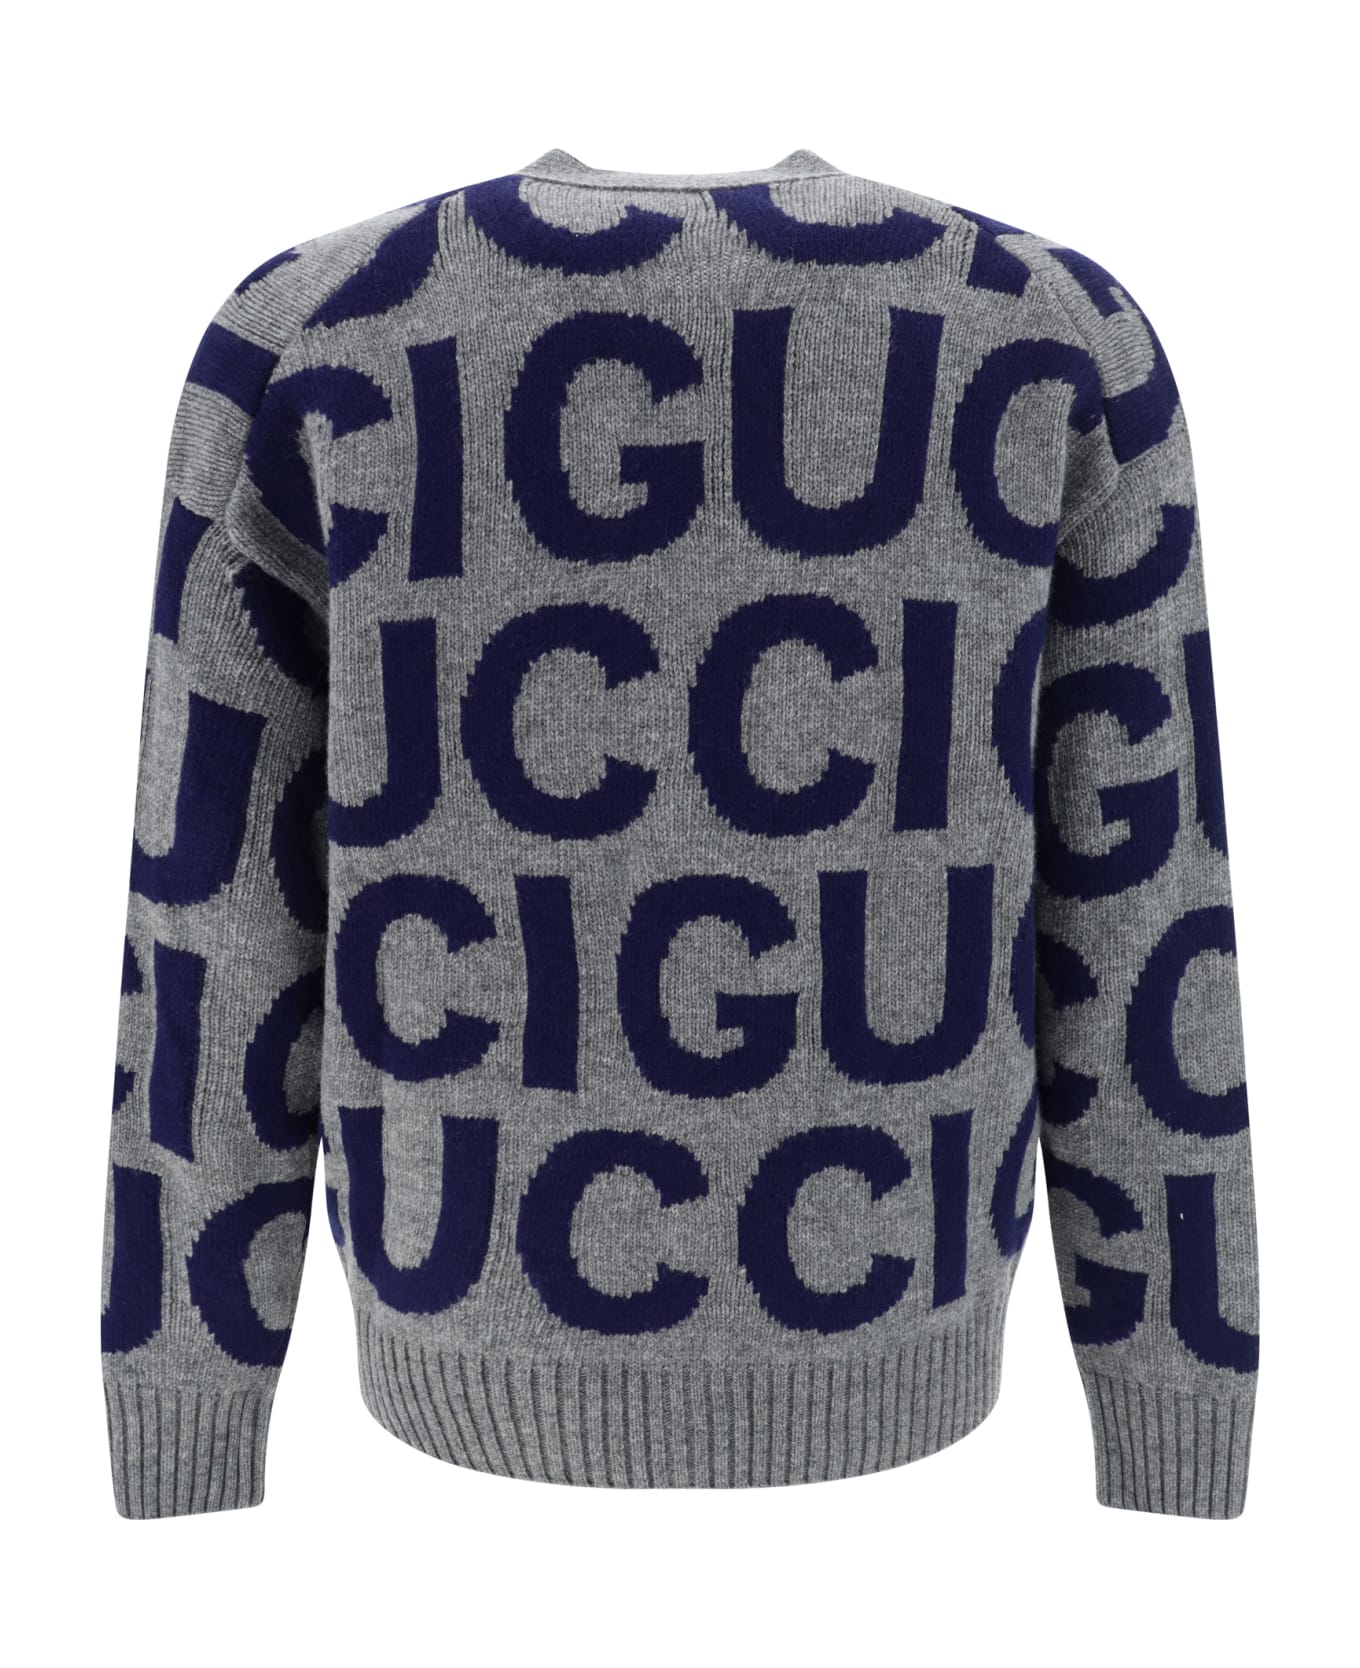 Gucci Cardigan - Grey/blue